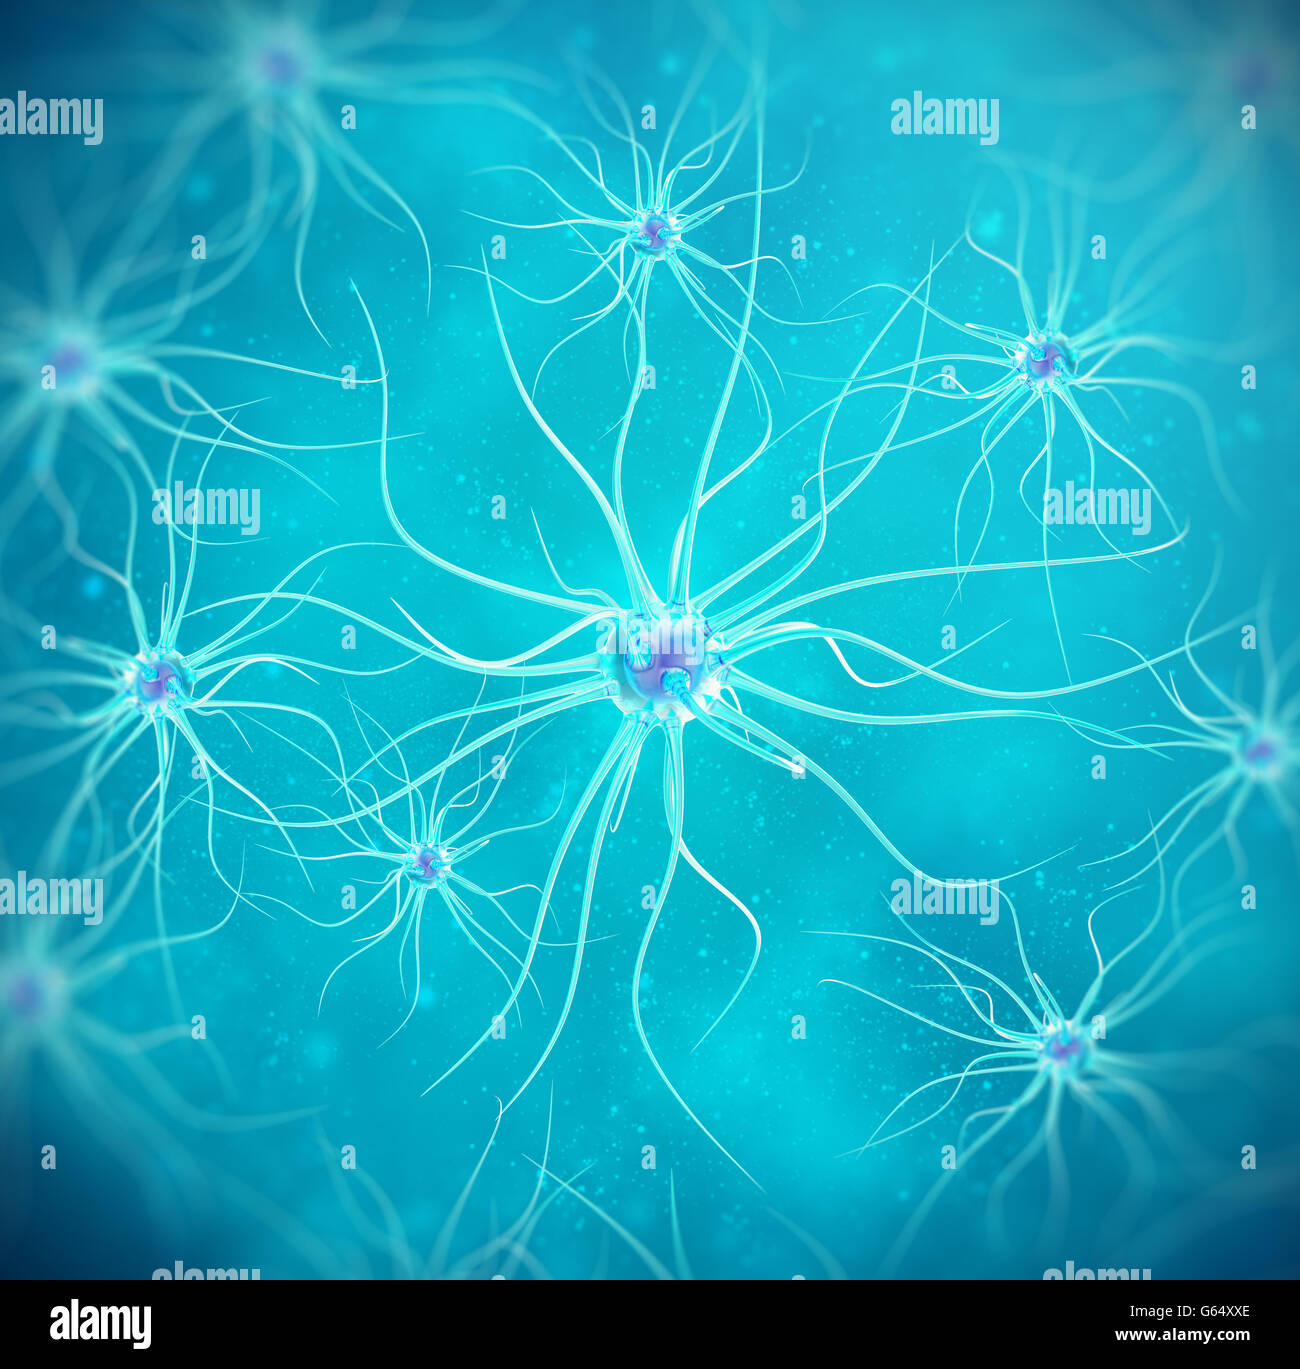 Les cellules du cerveau sur fond bleu. Illustration 3d de qualité élevée Banque D'Images